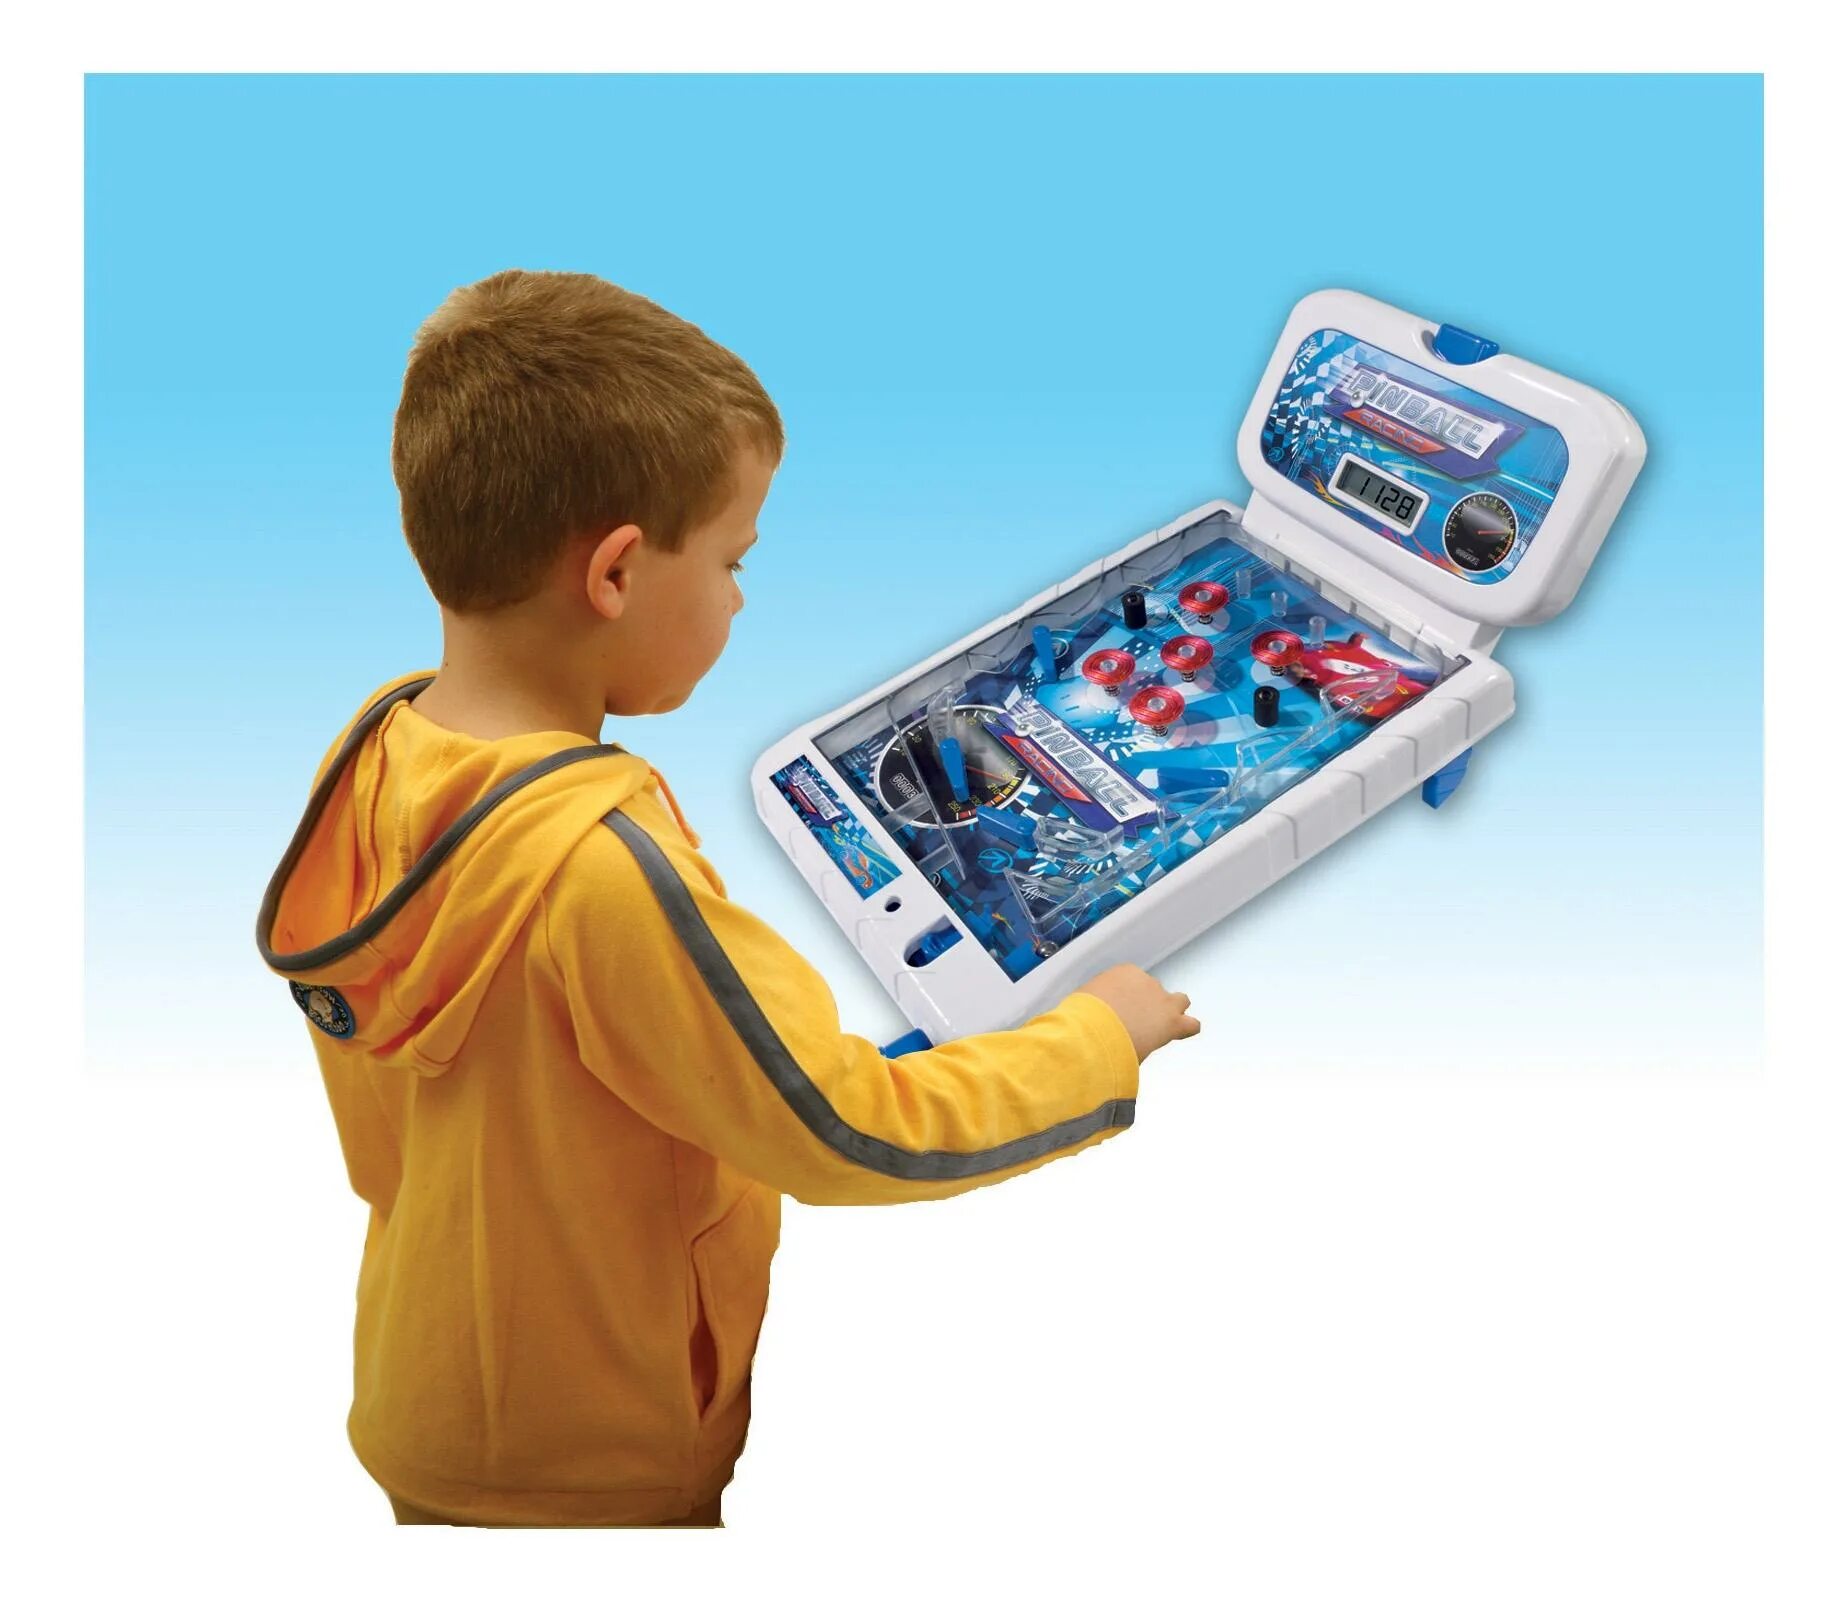 Пинбол Simba электрический. Simba пинбол электрический 3d. Интересные игрушки для мальчиков. Необычные игрушки для мальчиков. Для детей 16 лет игра